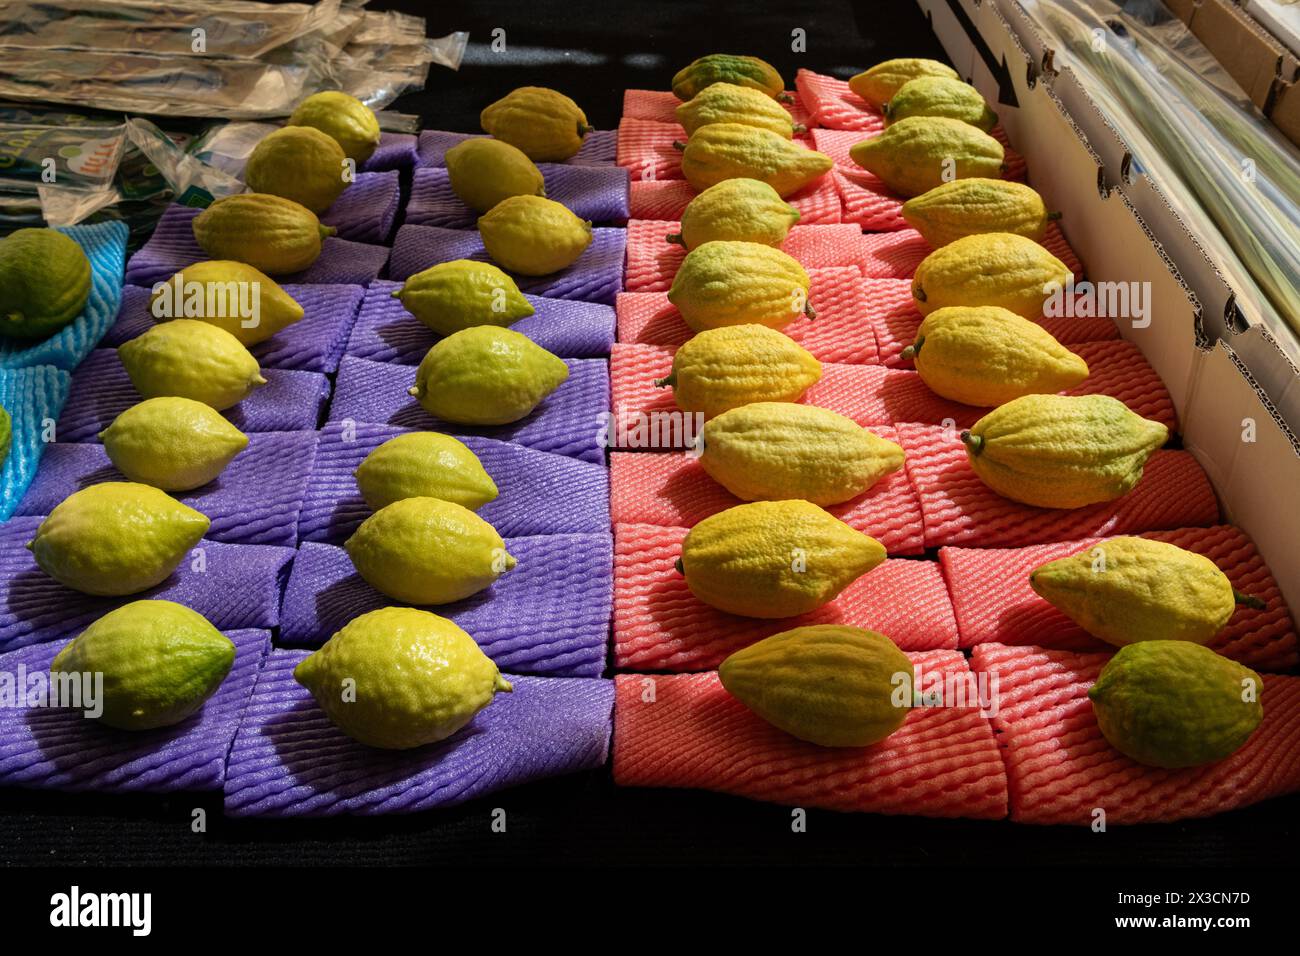 Etrogs ou fruits de citron, l'une des quatre espèces de plantes utilisées dans l'observance rituelle de la fête juive de Sukkot, étant vendu dans un Jerusal spécial Banque D'Images